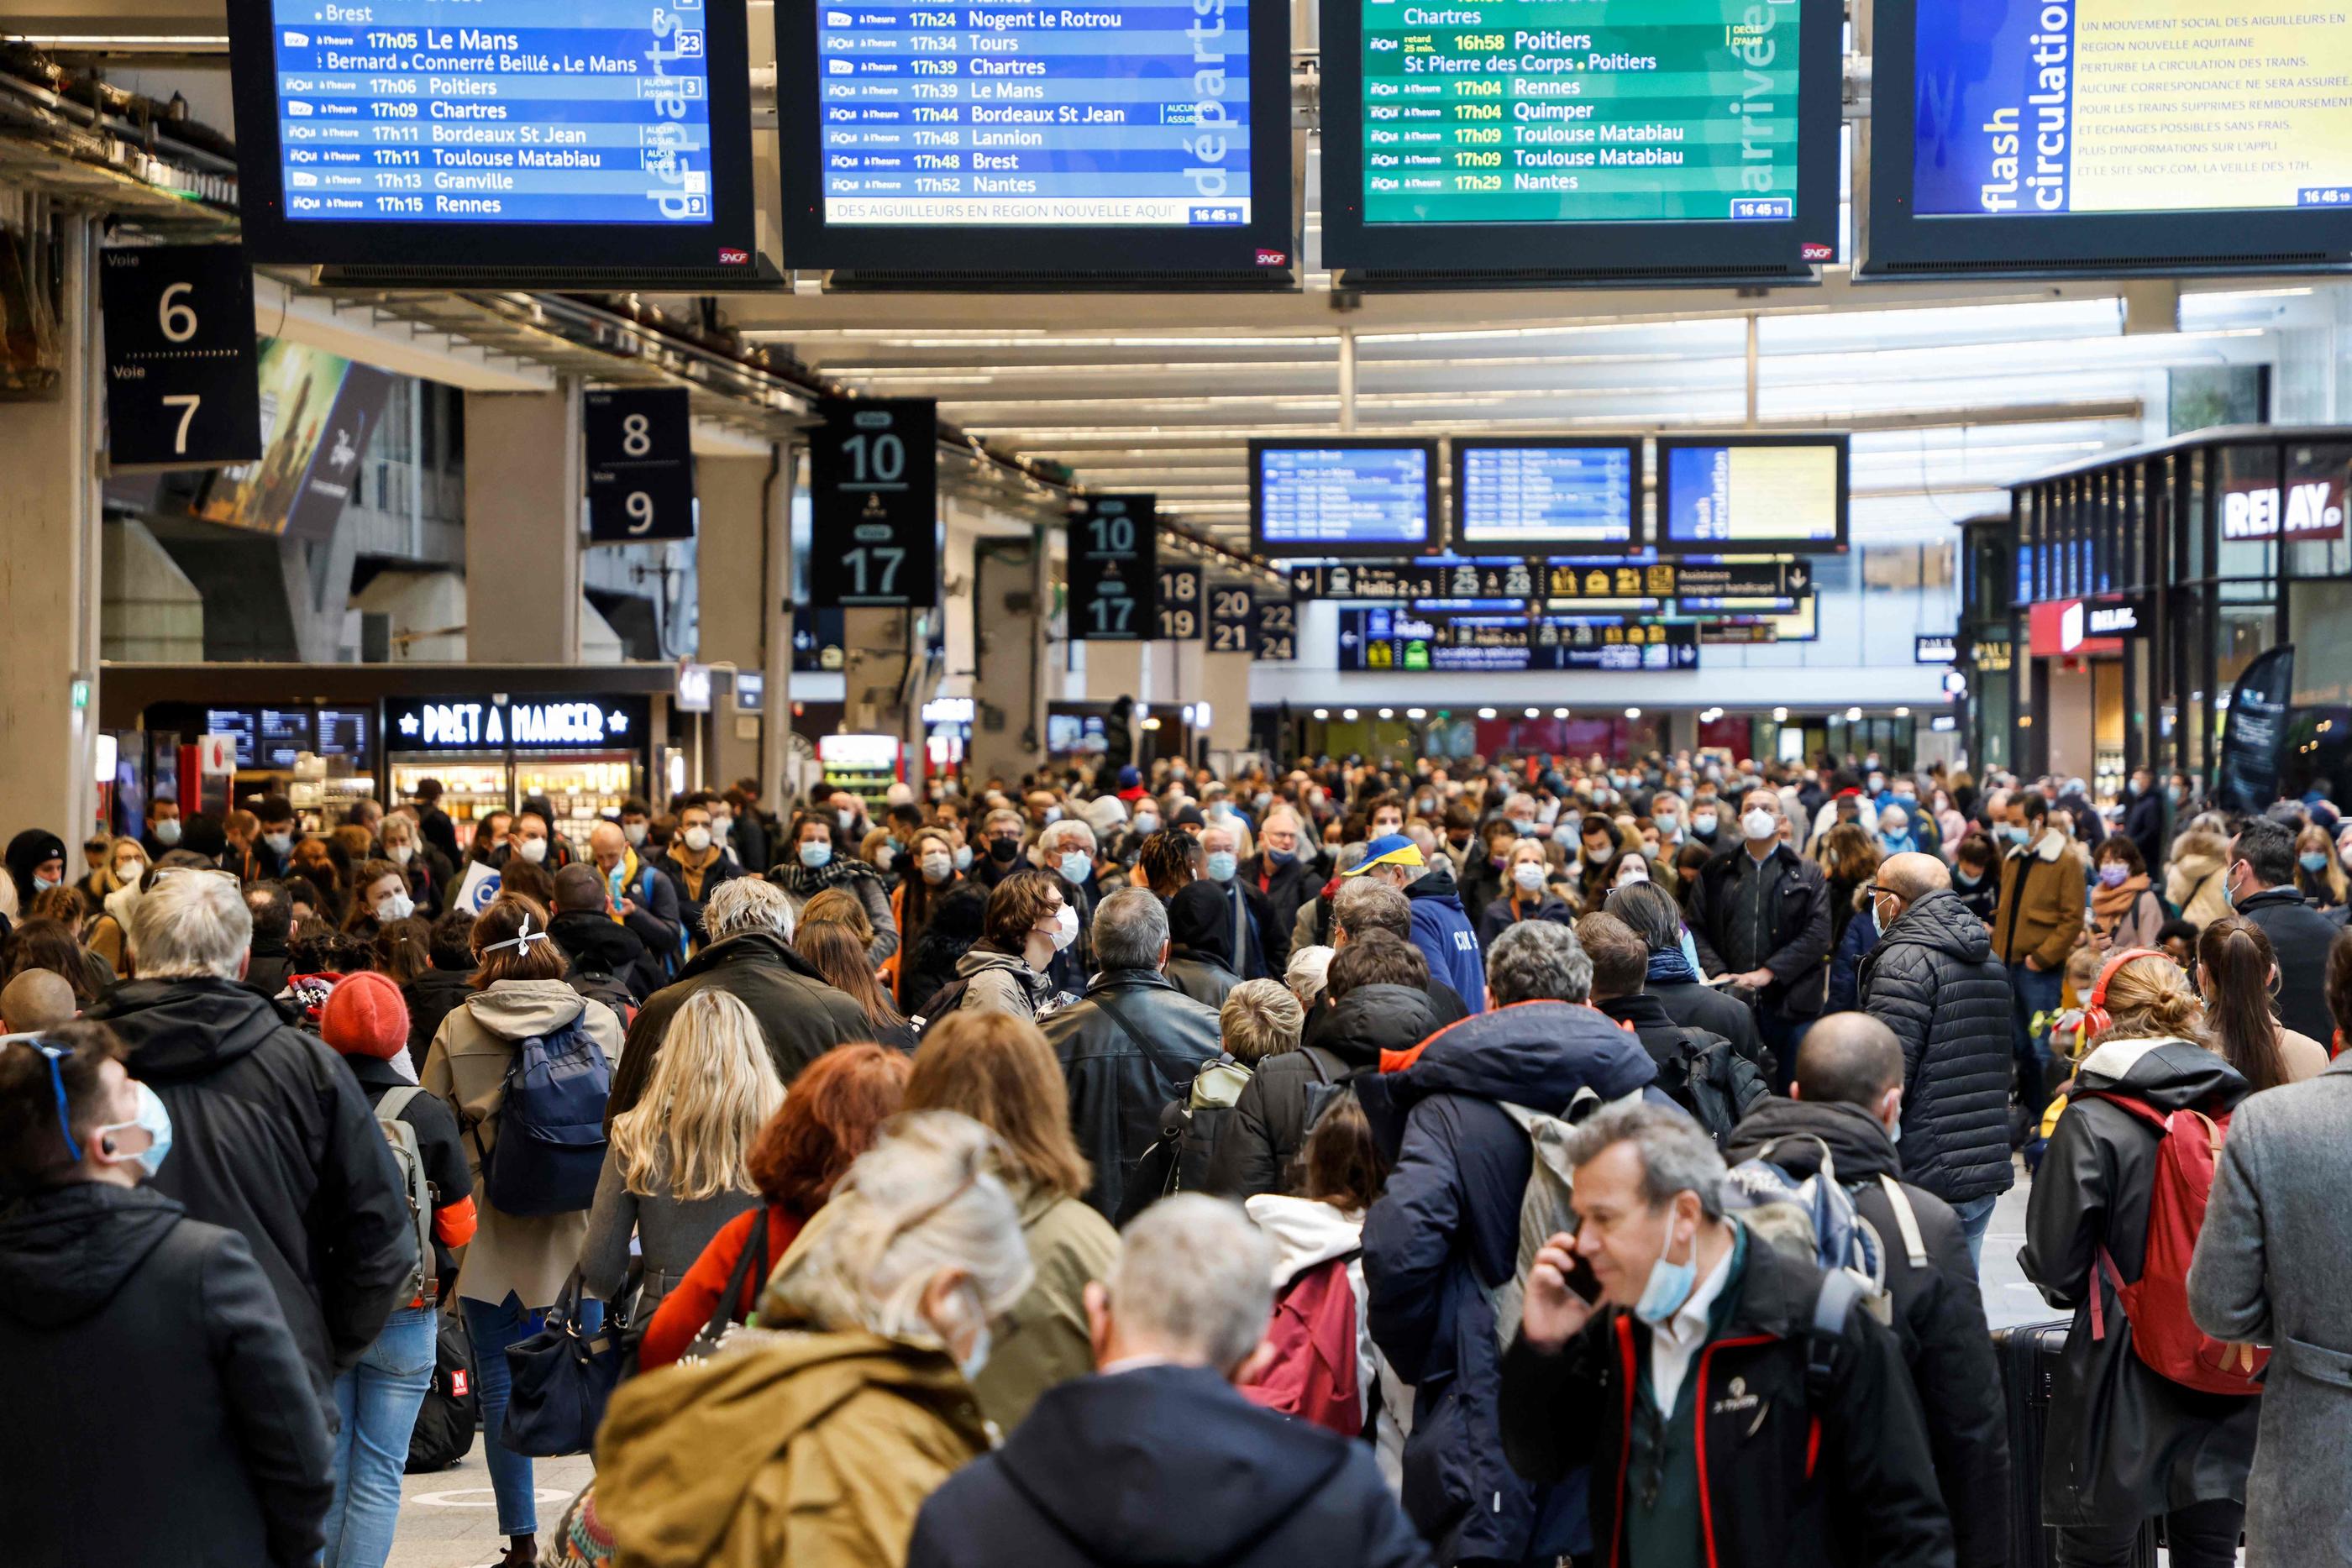 De nombreux trains vont être supprimés ce week-end, notamment au départ de la gare Montparnasse (en photo). D'autres mouvements sociaux pourraient avoir lieu avant ou pendant les JO. AFP/Ludovic Marin